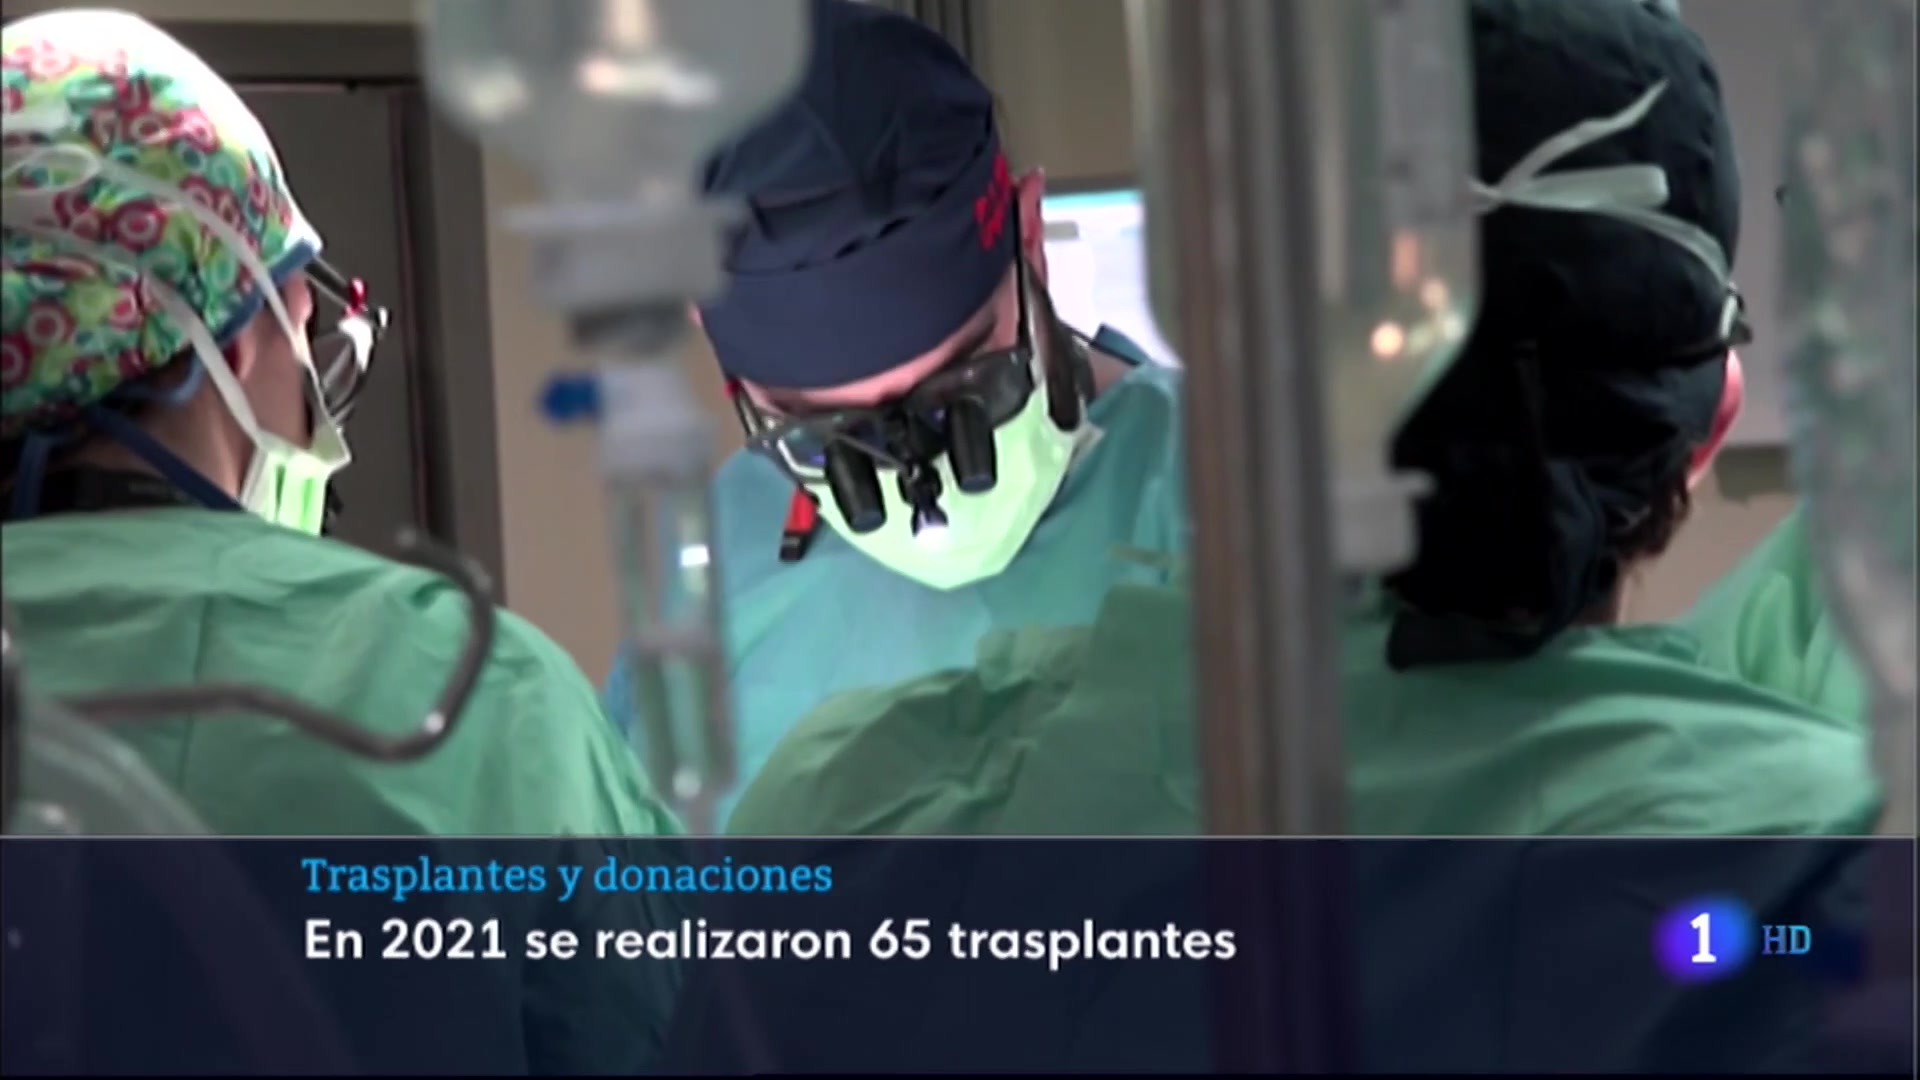 Ir al Video Balance de donaciones y transplantes en Extremadura